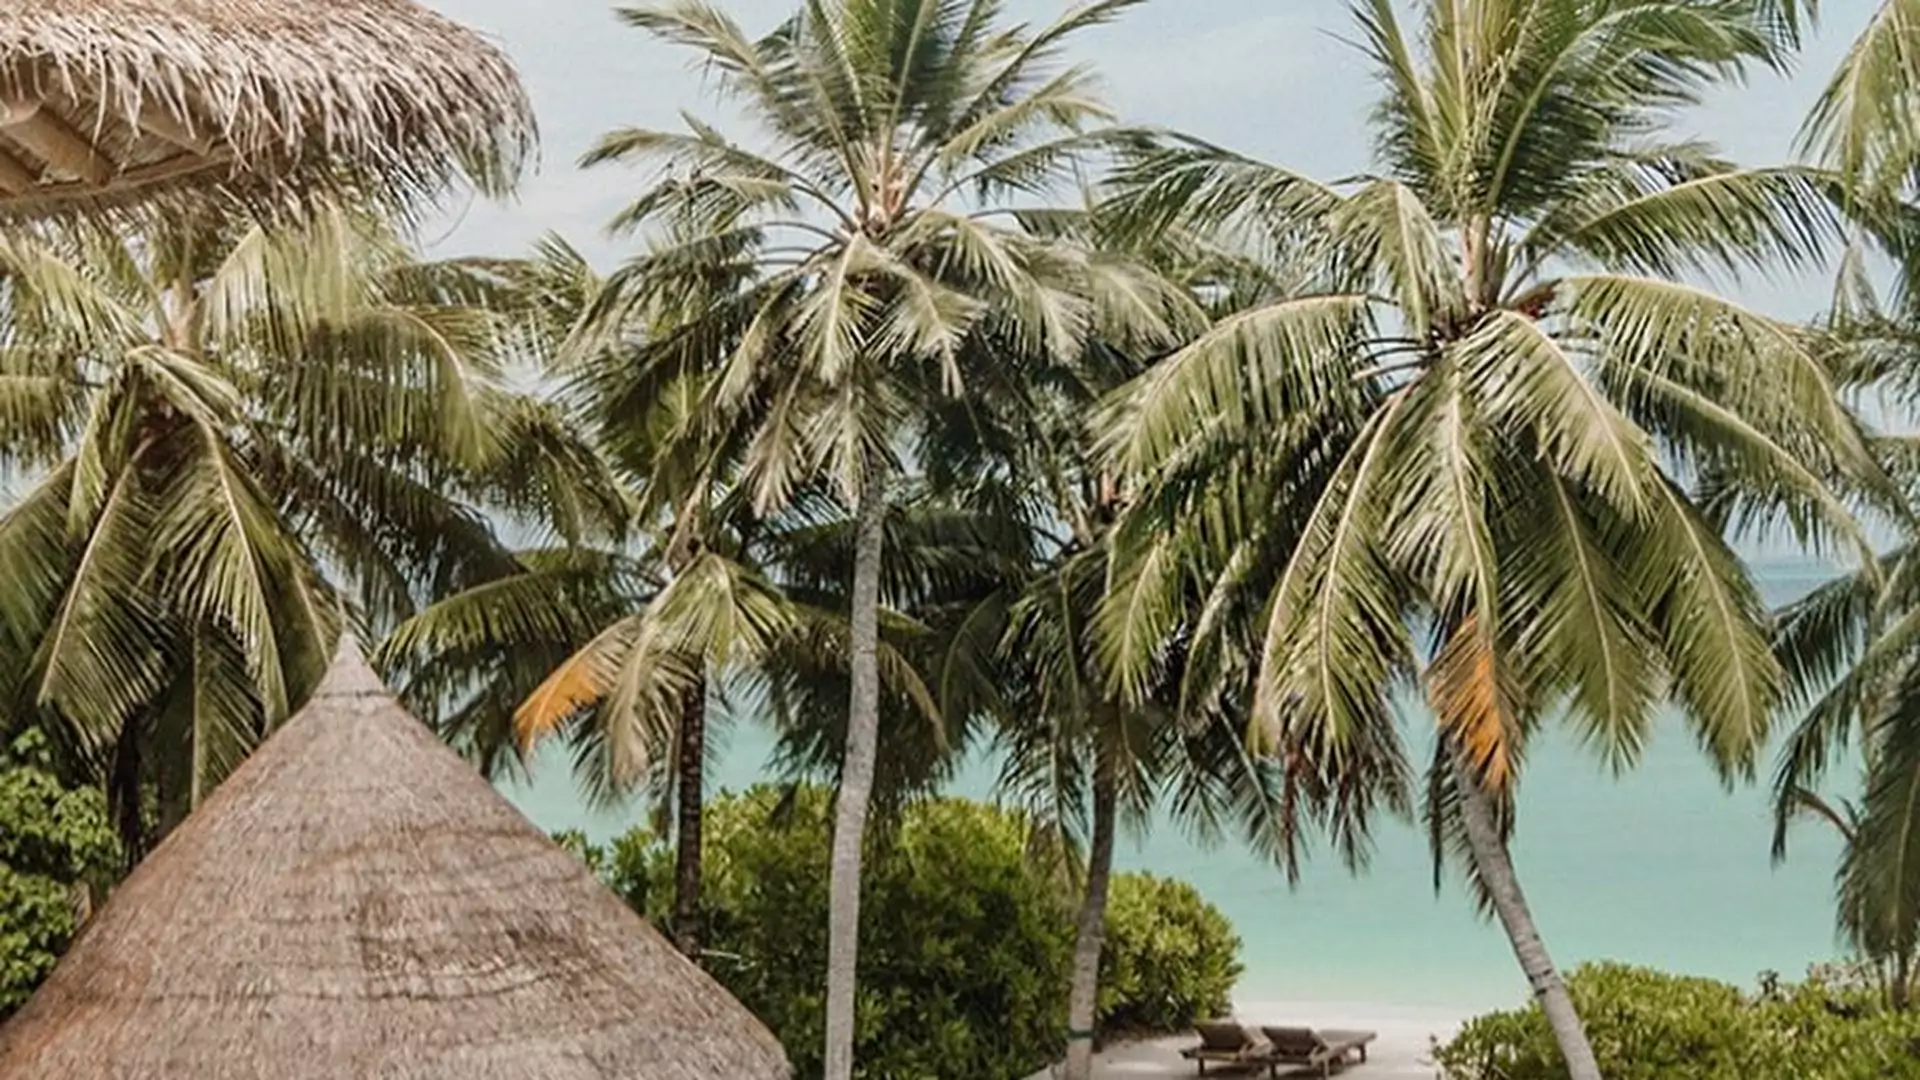 Poszukiwany pracownik księgarni w luksusowym kurorcie na Malediwach. Czy może być lepsze zajęcie na wakacje?